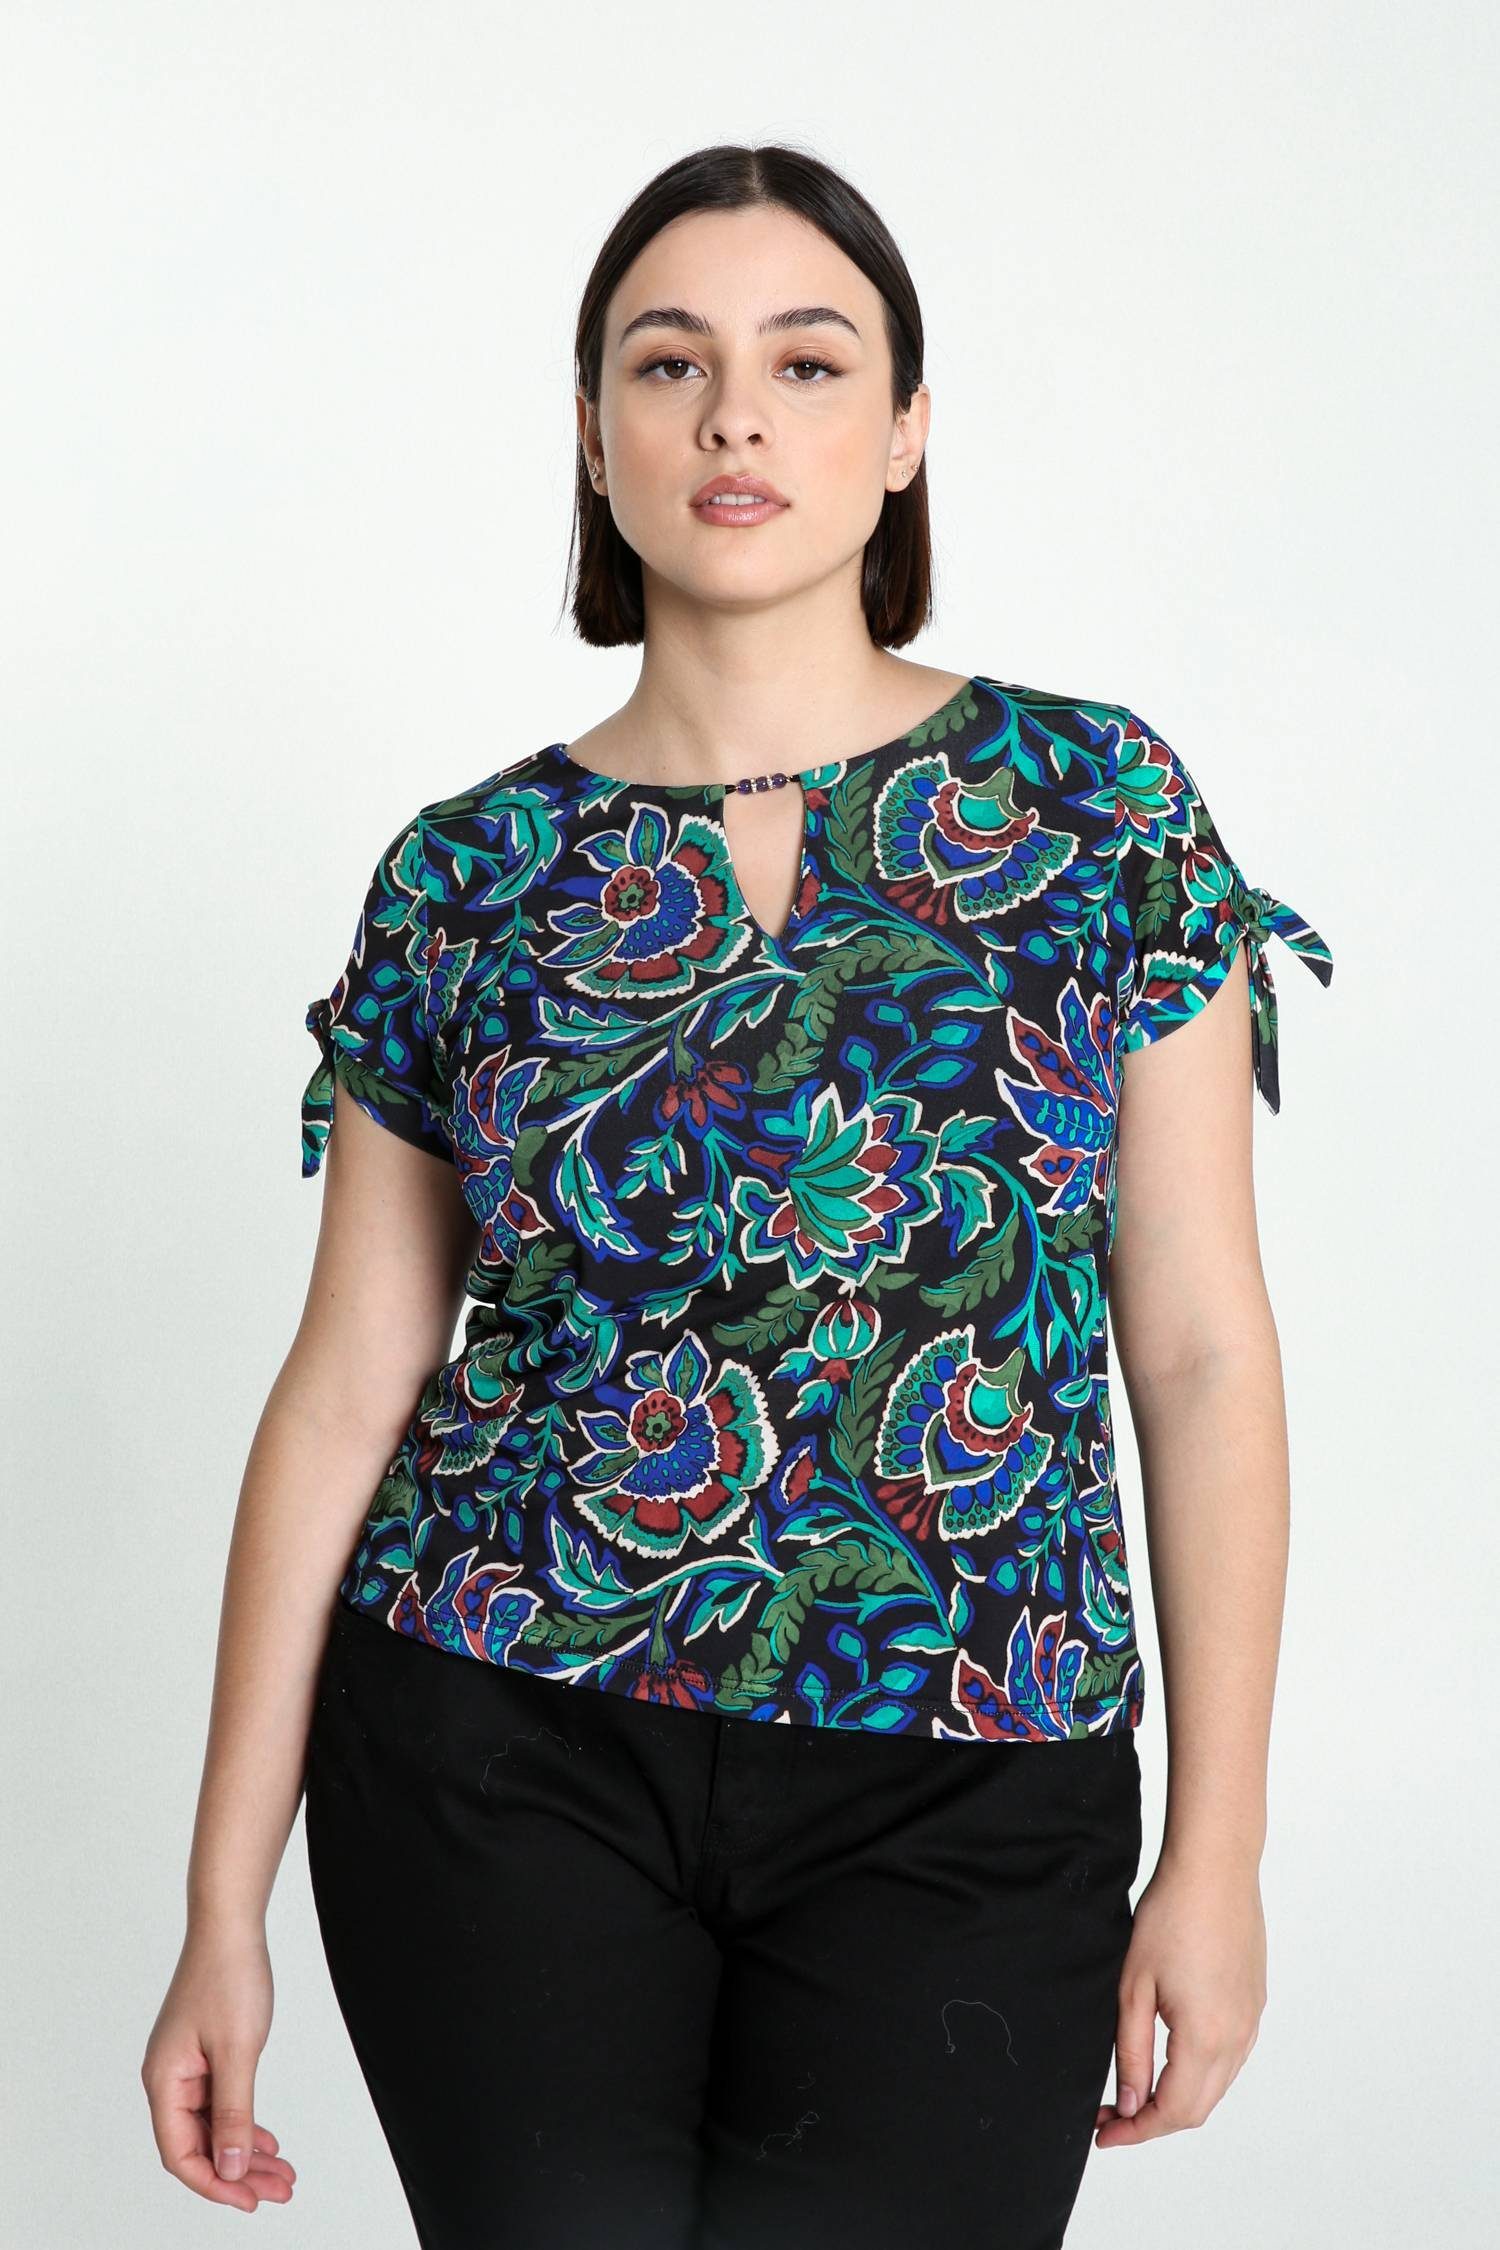 Cassis T-Shirt Kaschmirdruck T-Shirt Farbenfrohem Mit